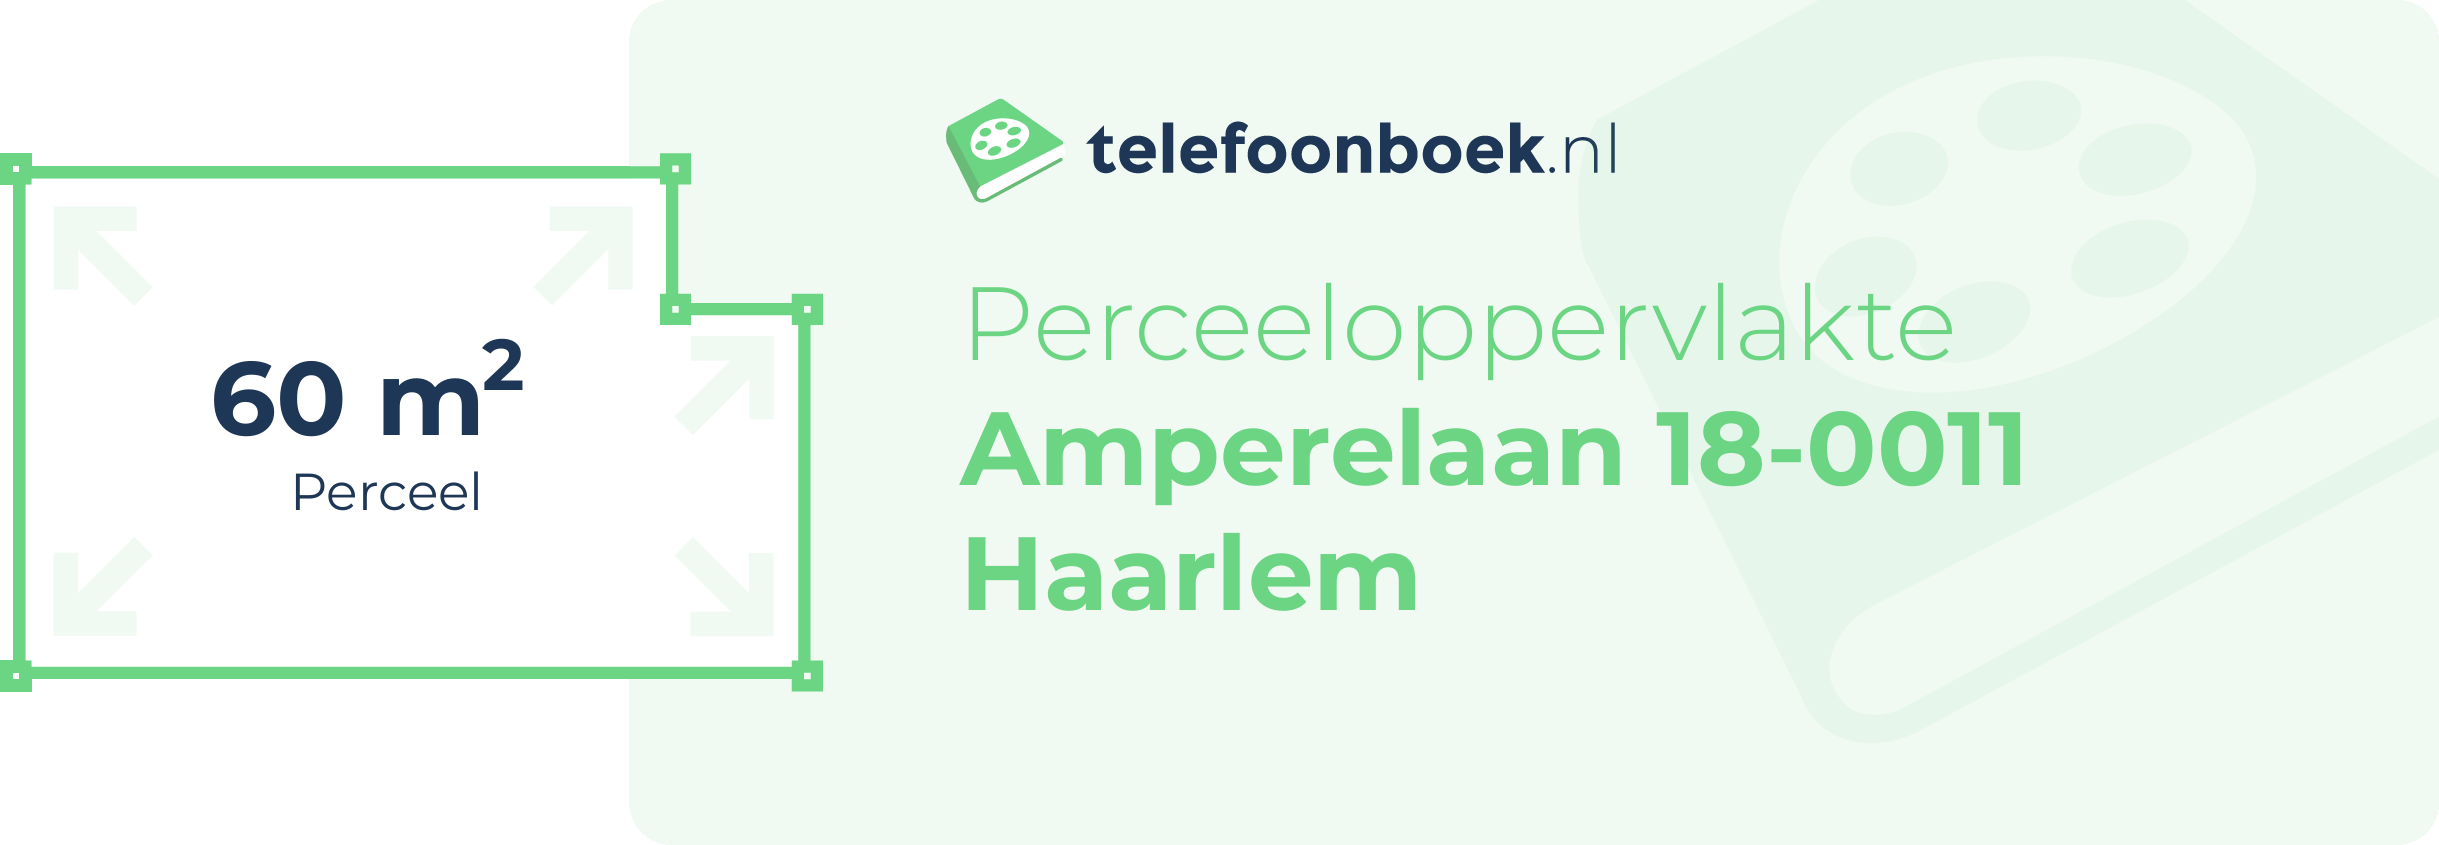 Perceeloppervlakte Amperelaan 18-0011 Haarlem